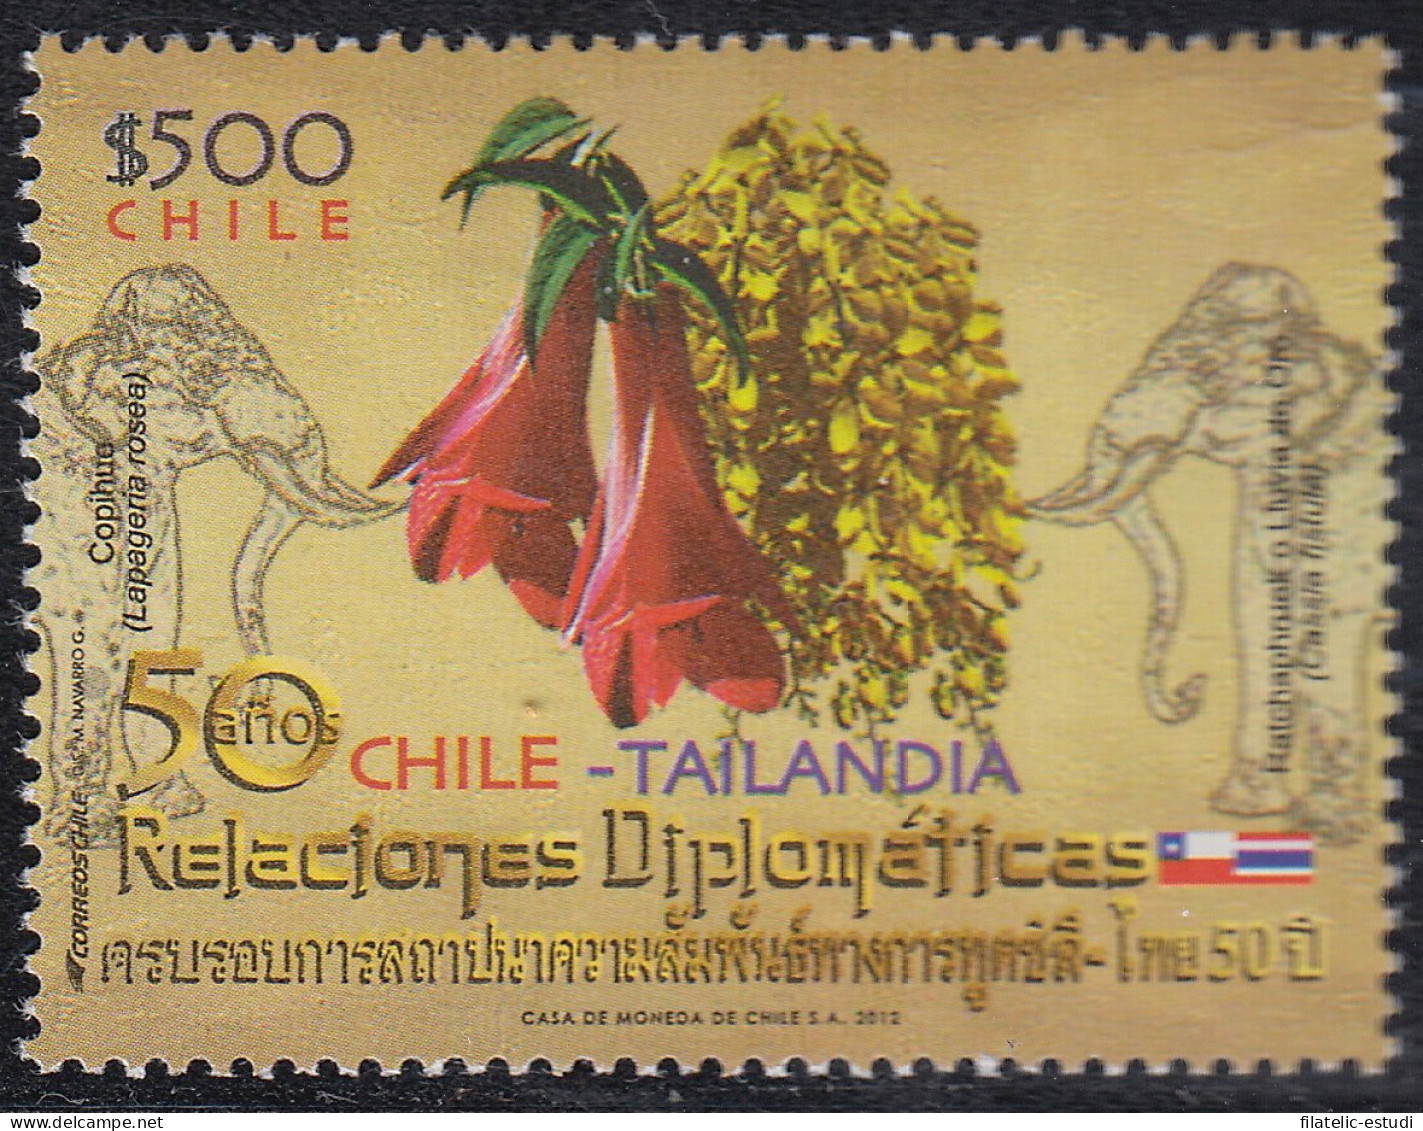 Chile 2011 2012 50 Años De Relaciones Chile - Tailandia MNH - Chili